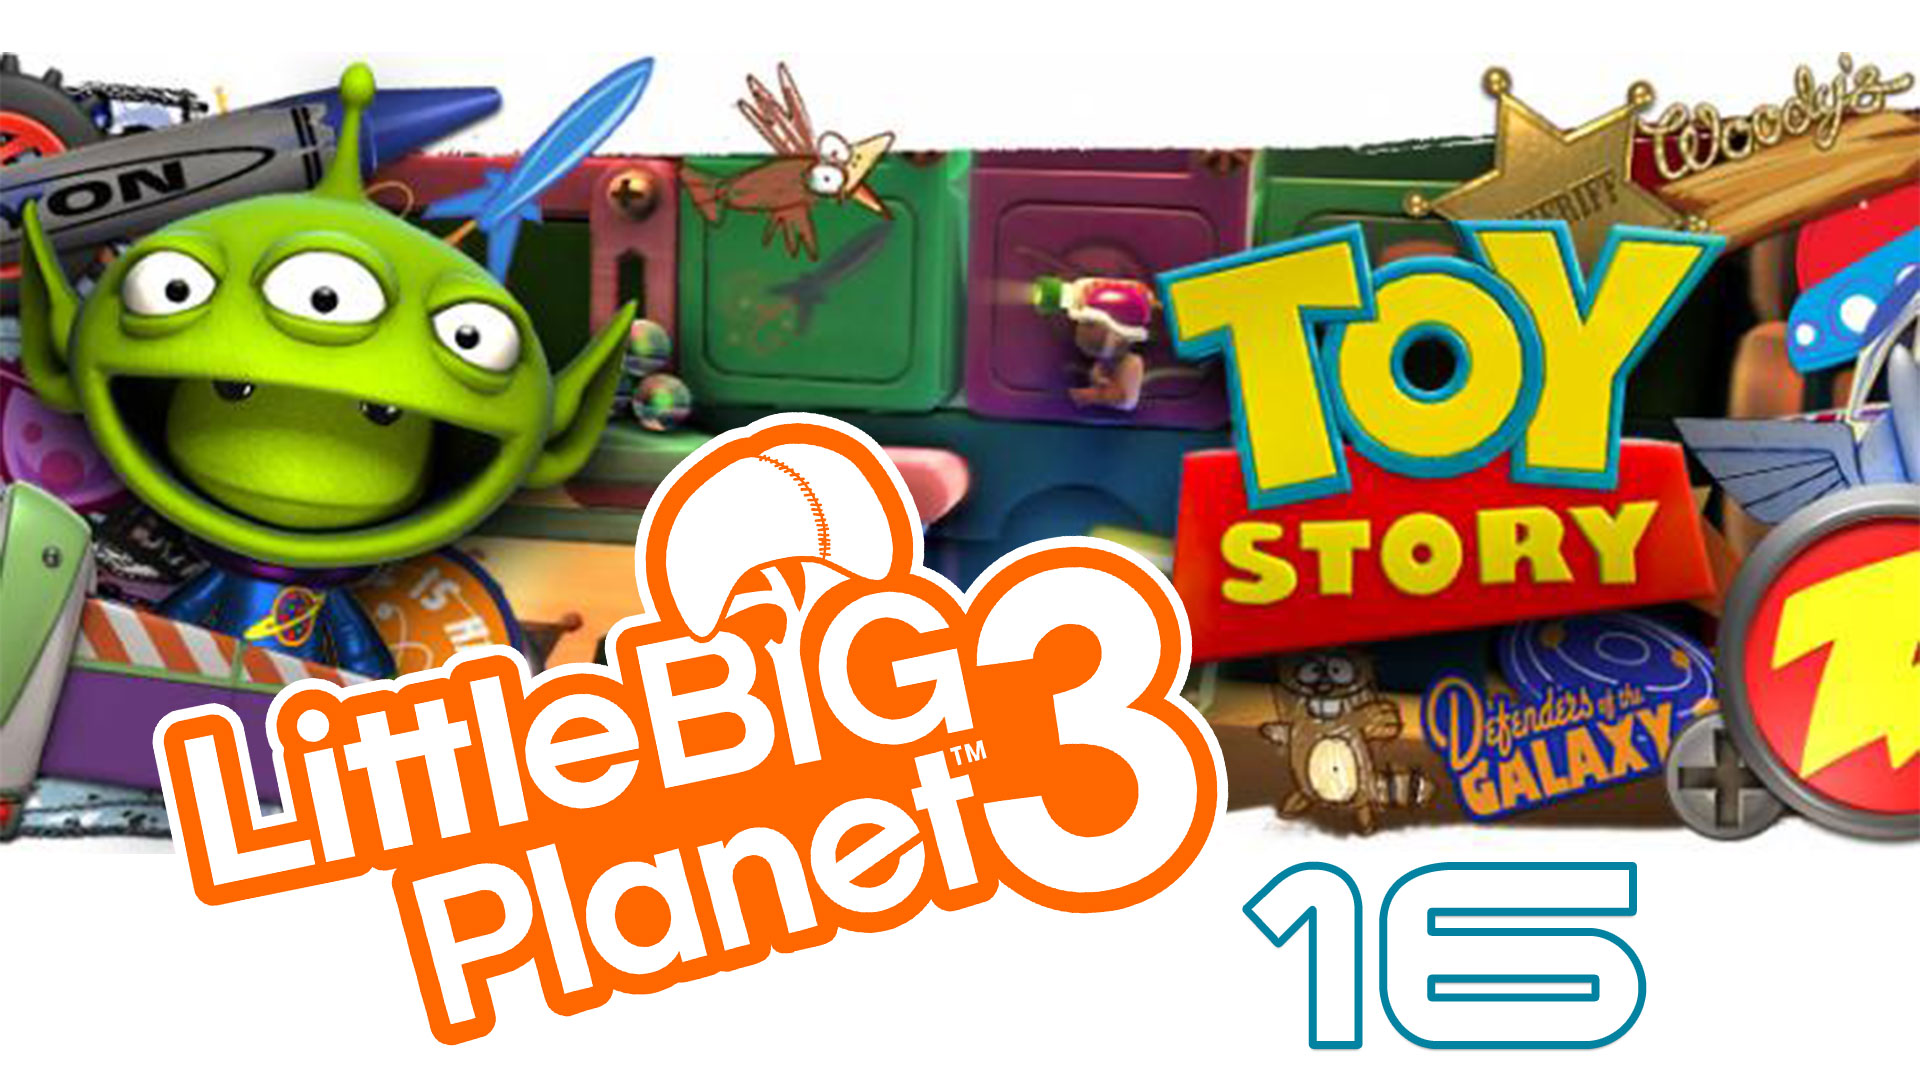 LittleBigPlanet 3 - Сезон 2 - Кооператив - История игрушек ч. 7 (финал) [#16] | PS4 (2016 г.)